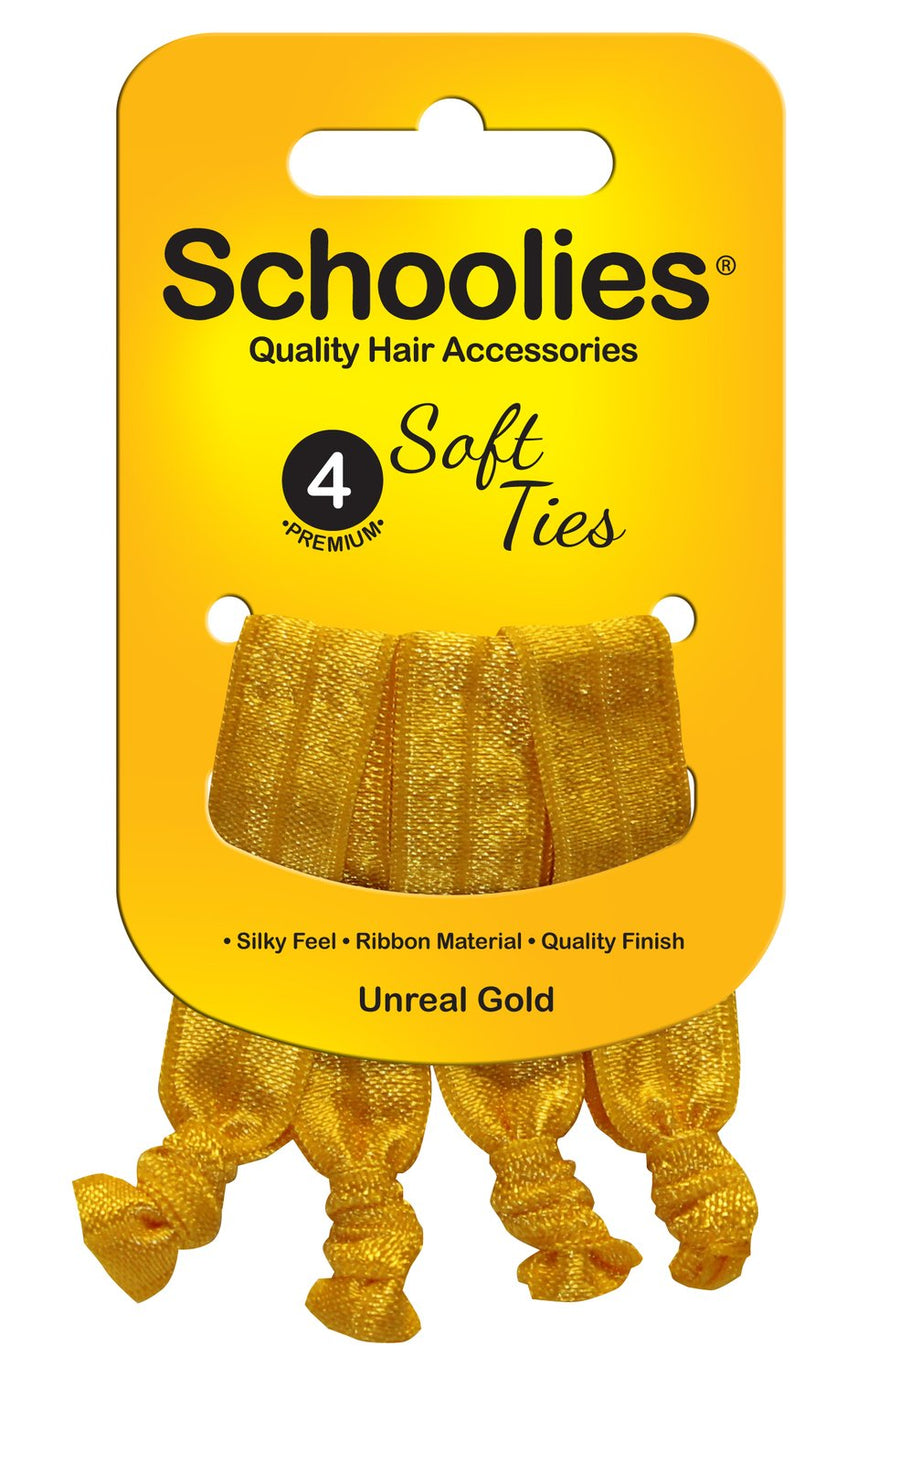 Schoolies Soft Ties 4pc Unreal Gold